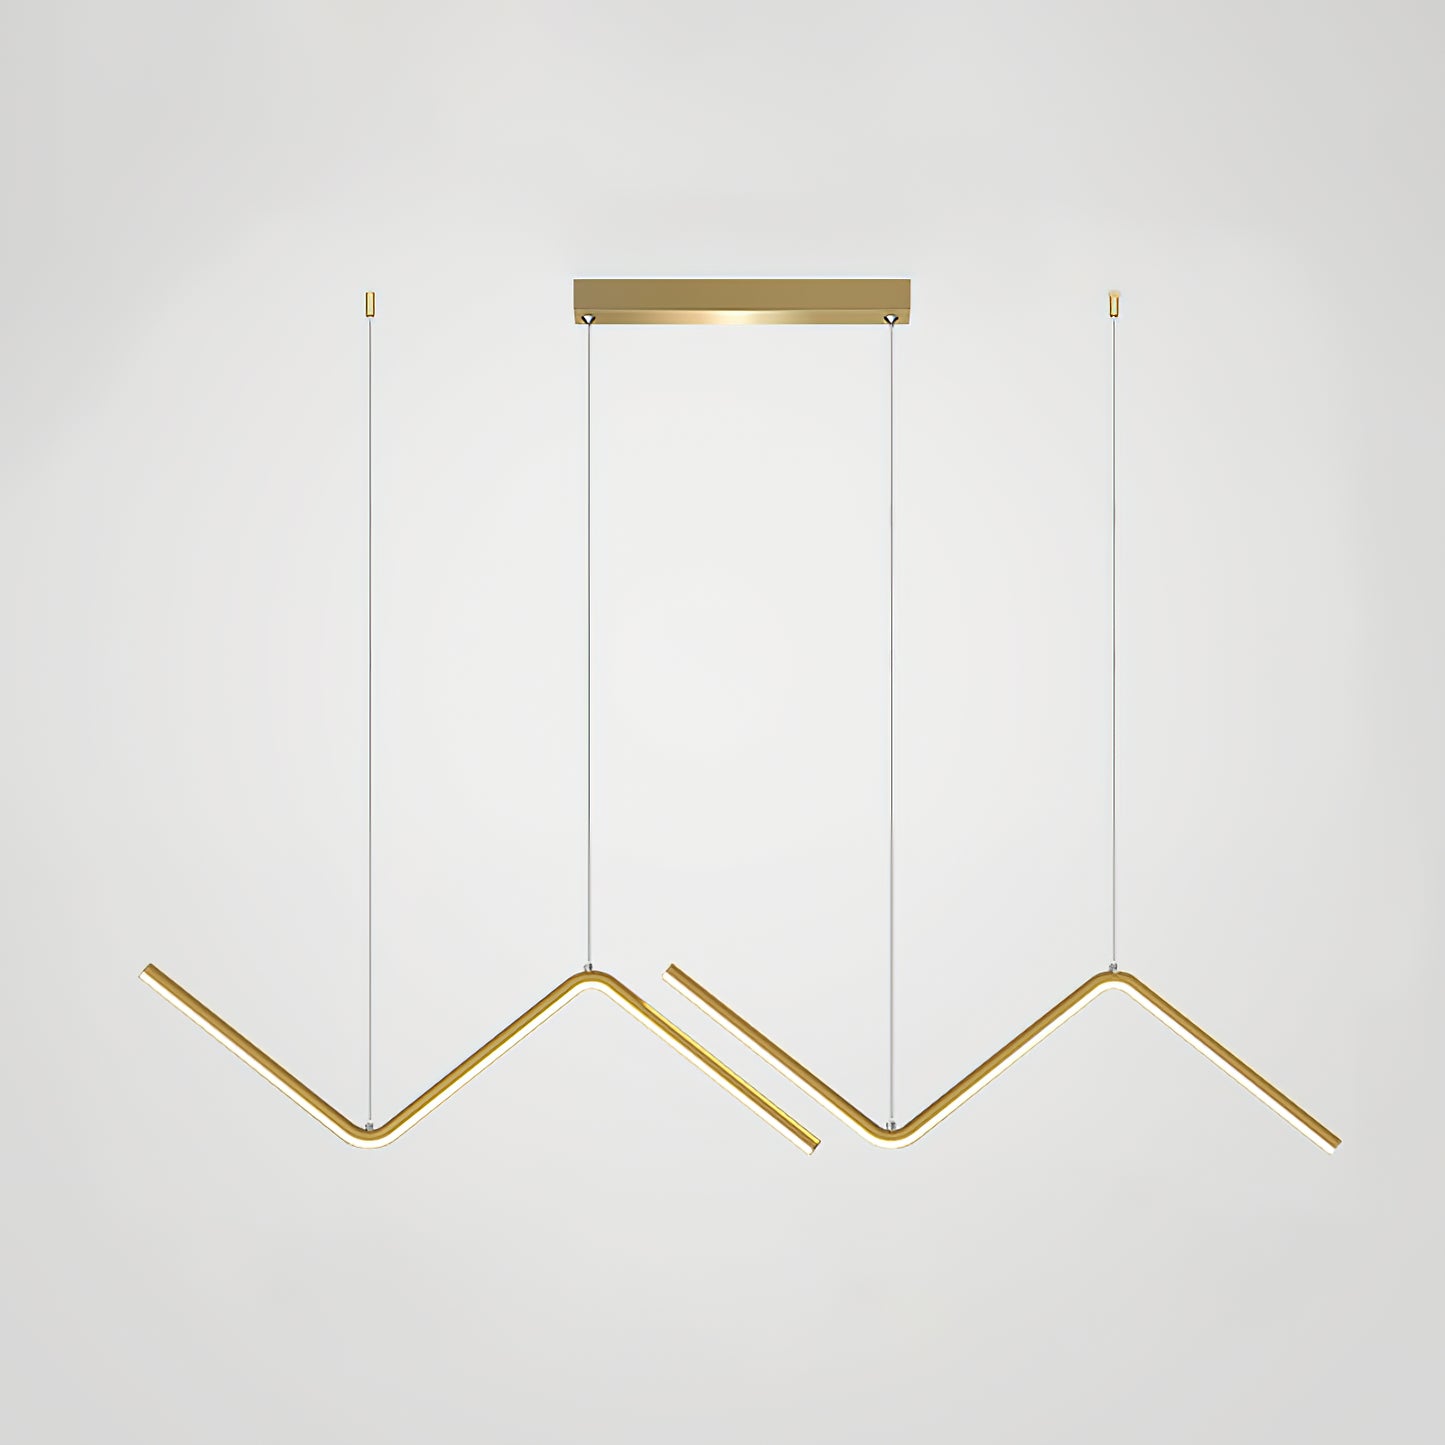 Creative Silicone Line Pendant Lamp